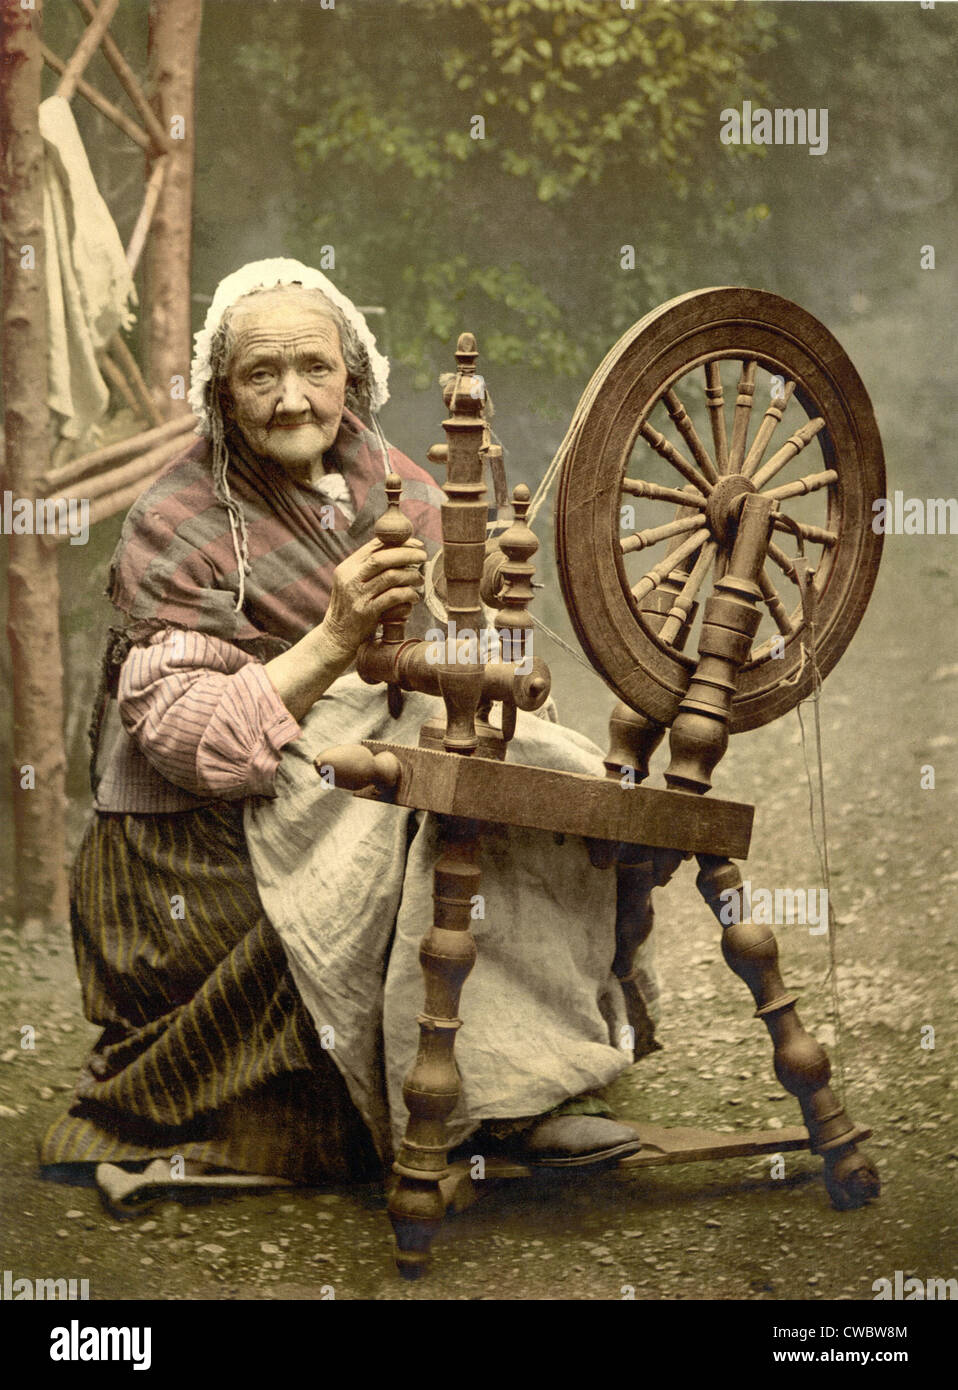 Personnes âgées Spinner irlandais de travail à l'extérieur à son rouet à la fin du xixe siècle. Bien que pittoresque, comme la filature accueil Banque D'Images